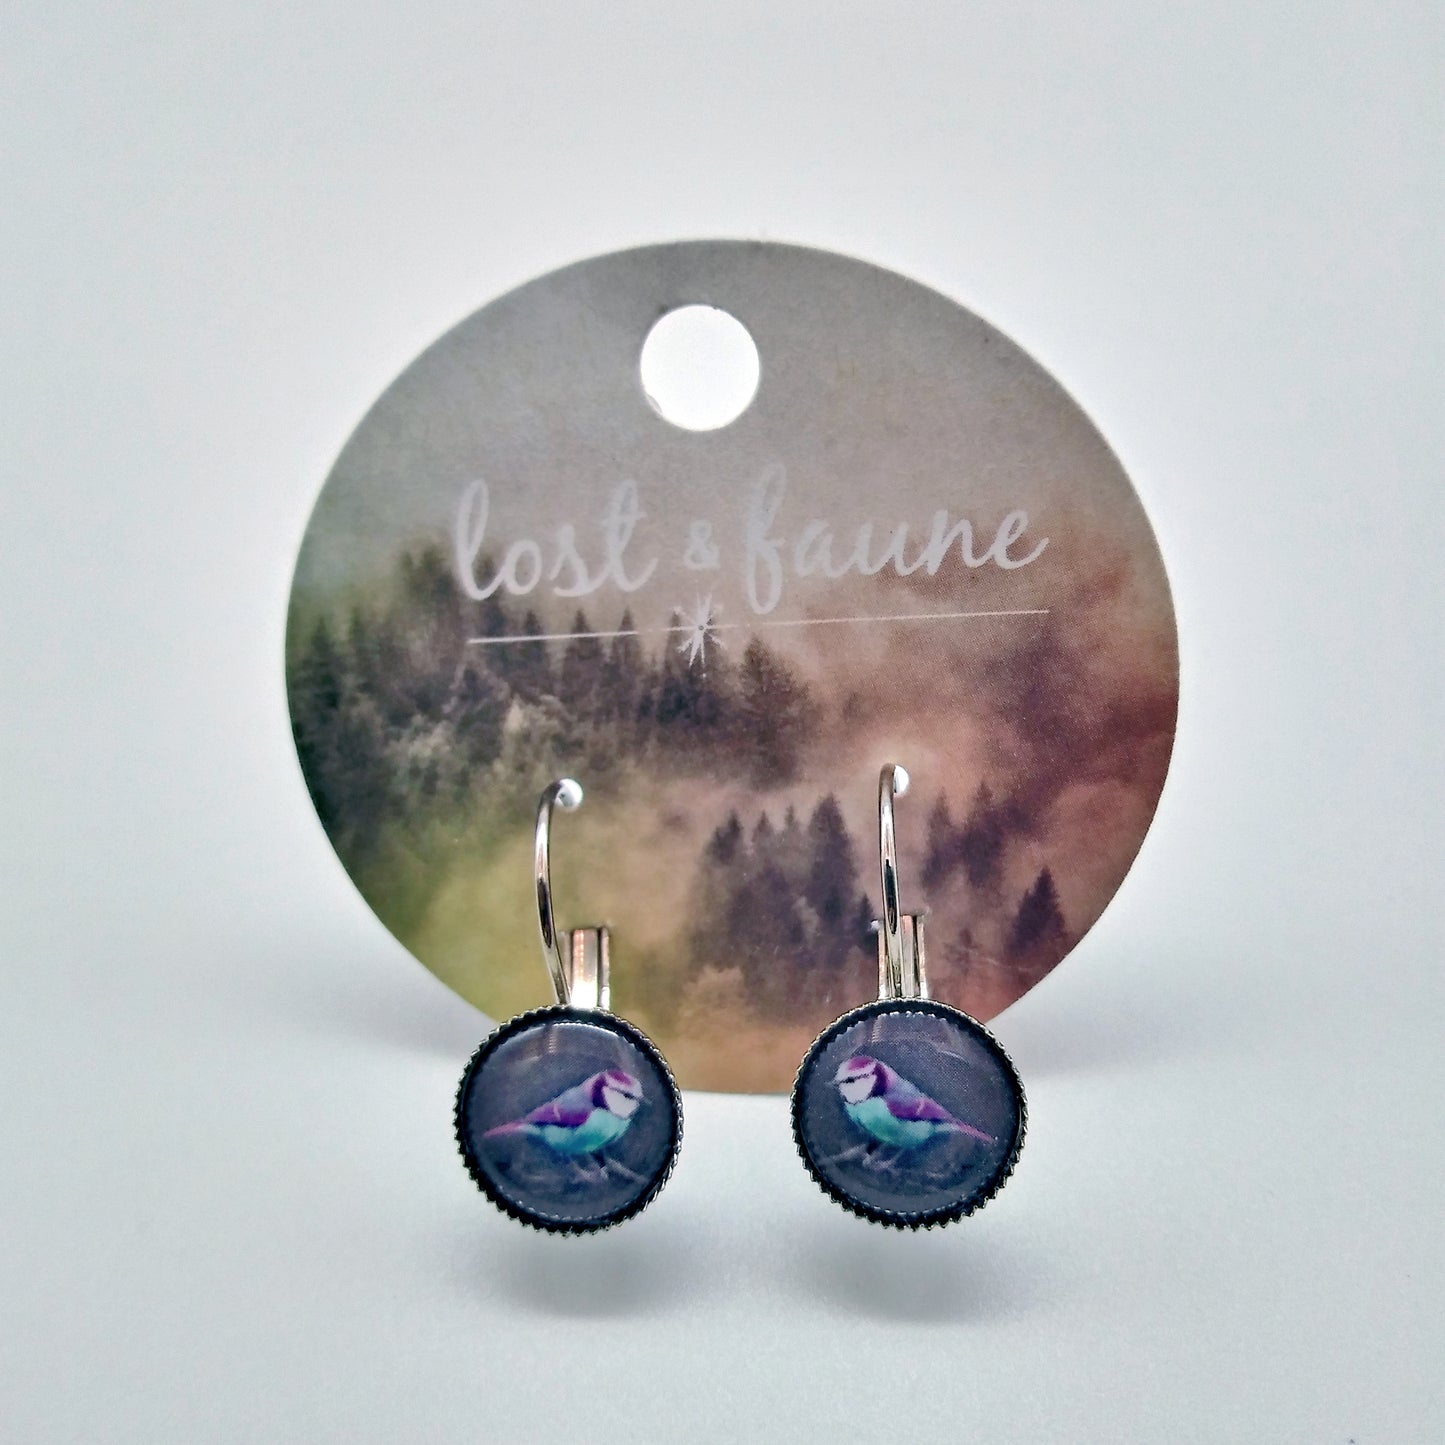 Earrings - by Lost & Faune